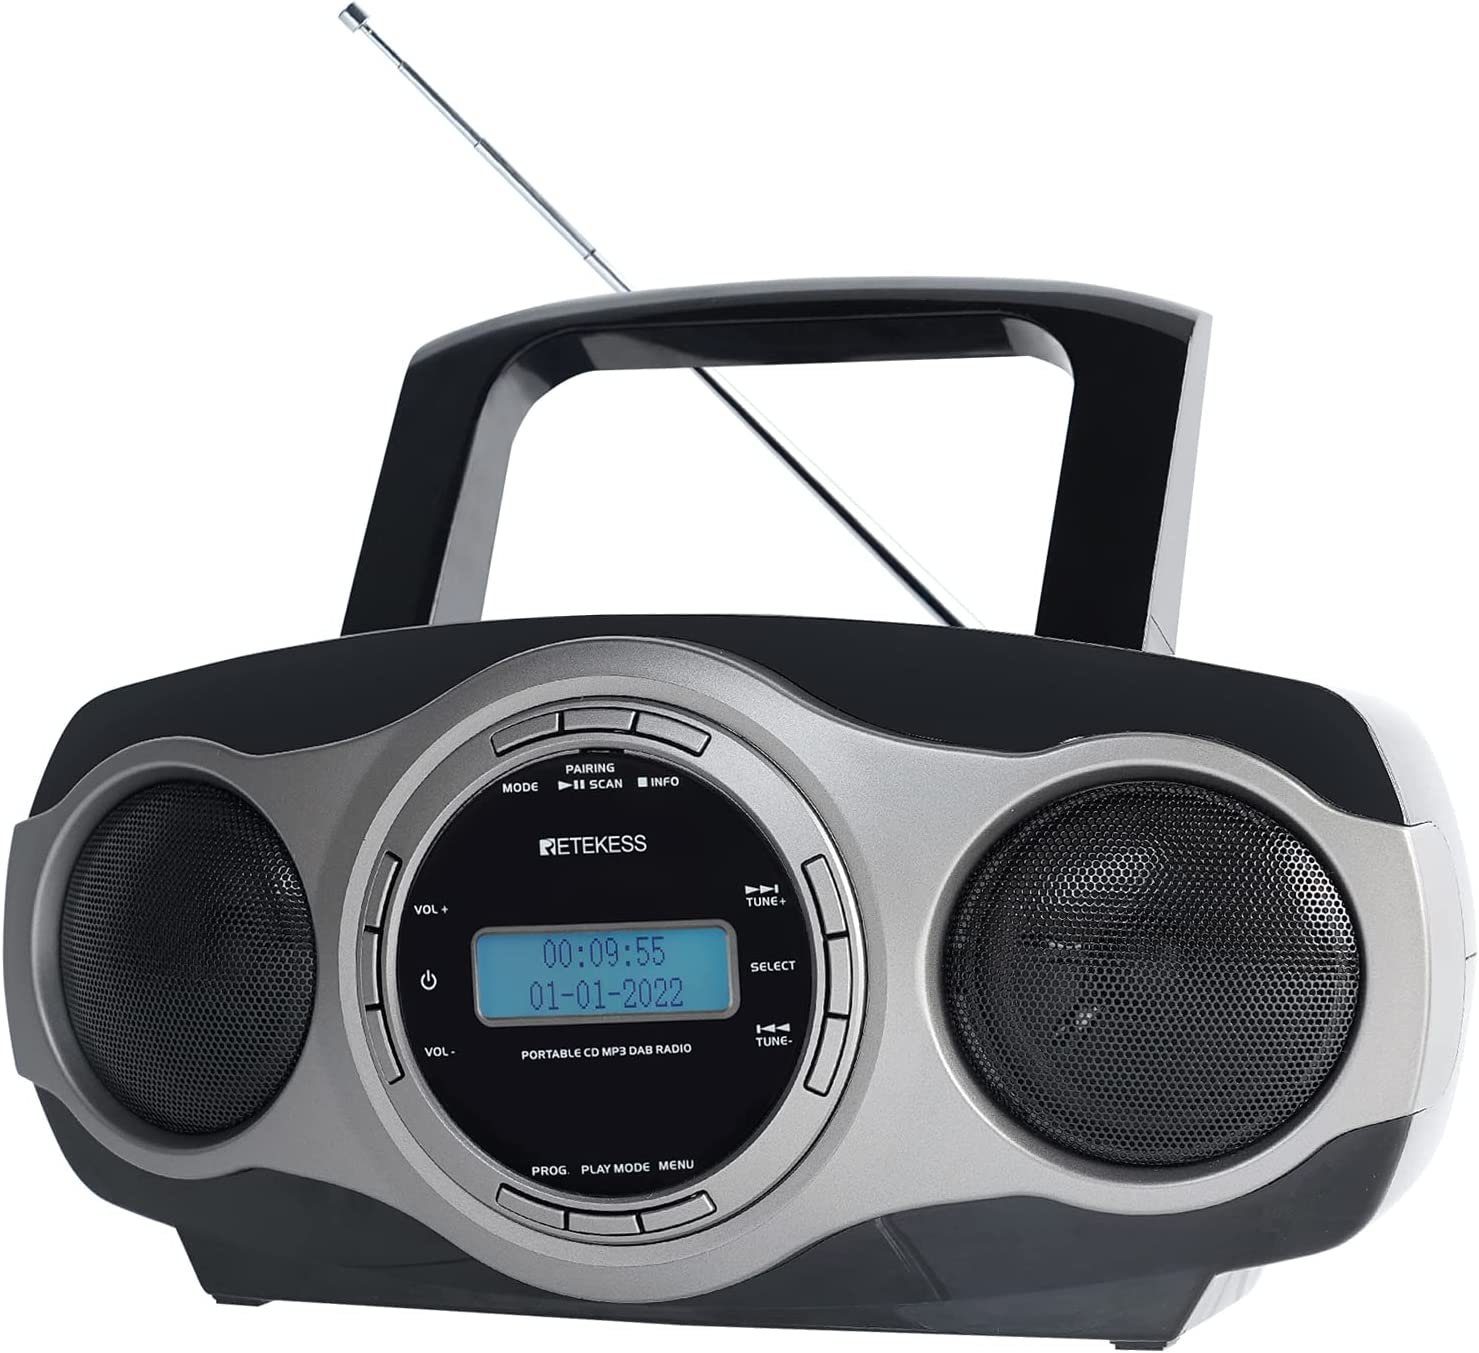 MP3 CD-Radiorecorder DAB mit Bluetooth, FM mit TR631 FM-Stereo, (DAB CD-Player Radio Player) Radio Retekess